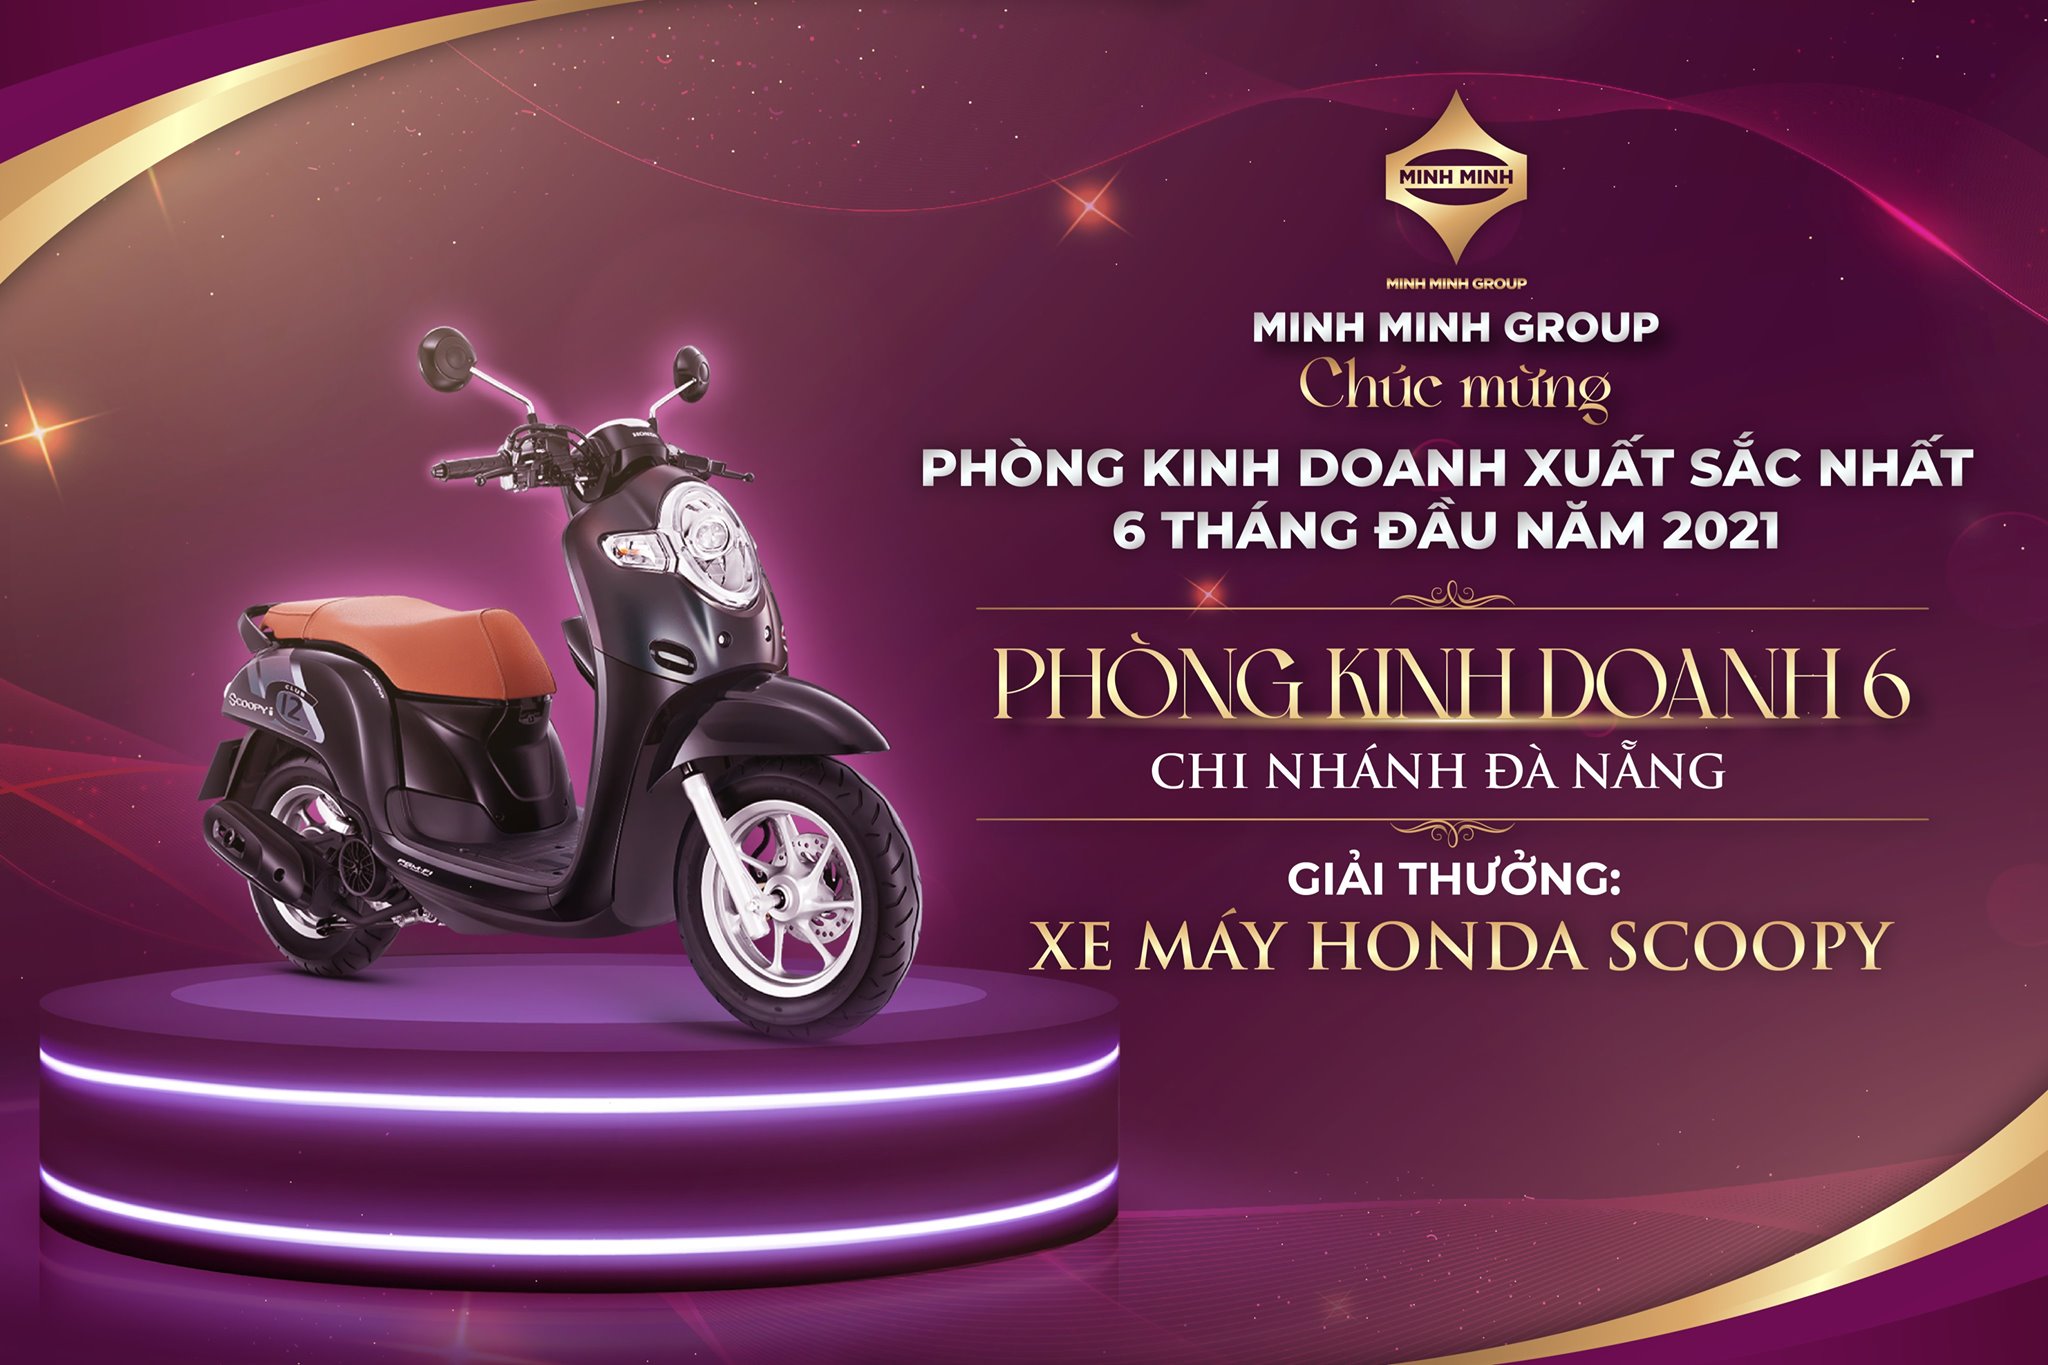 Giải thưởng phòng kinh doanh xuất sắc nhất 6 tháng đầu năm thuộc về Phòng kinh doanh 6 - Chi nhánh Đà Nẵng - Minh Minh Group